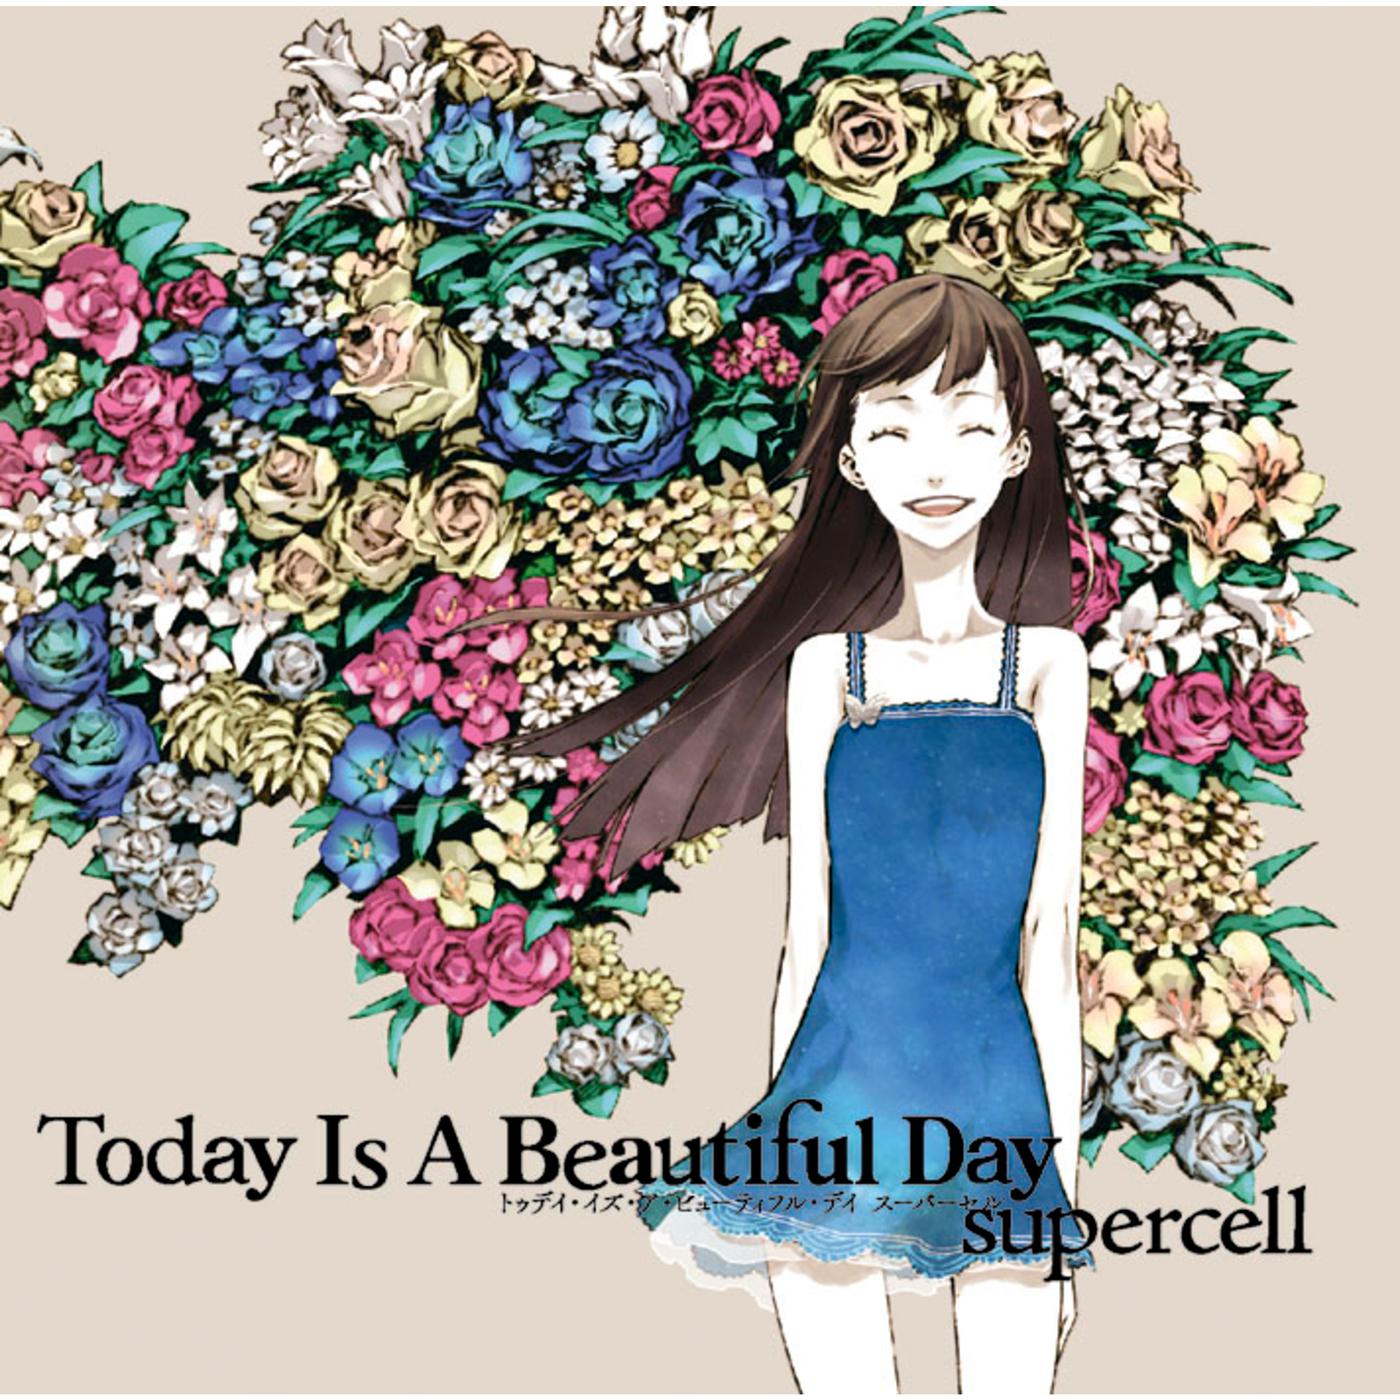 終わりへ向かう始まりの歌歌词 歌手supercell-专辑Today Is A Beautiful Day-单曲《終わりへ向かう始まりの歌》LRC歌词下载